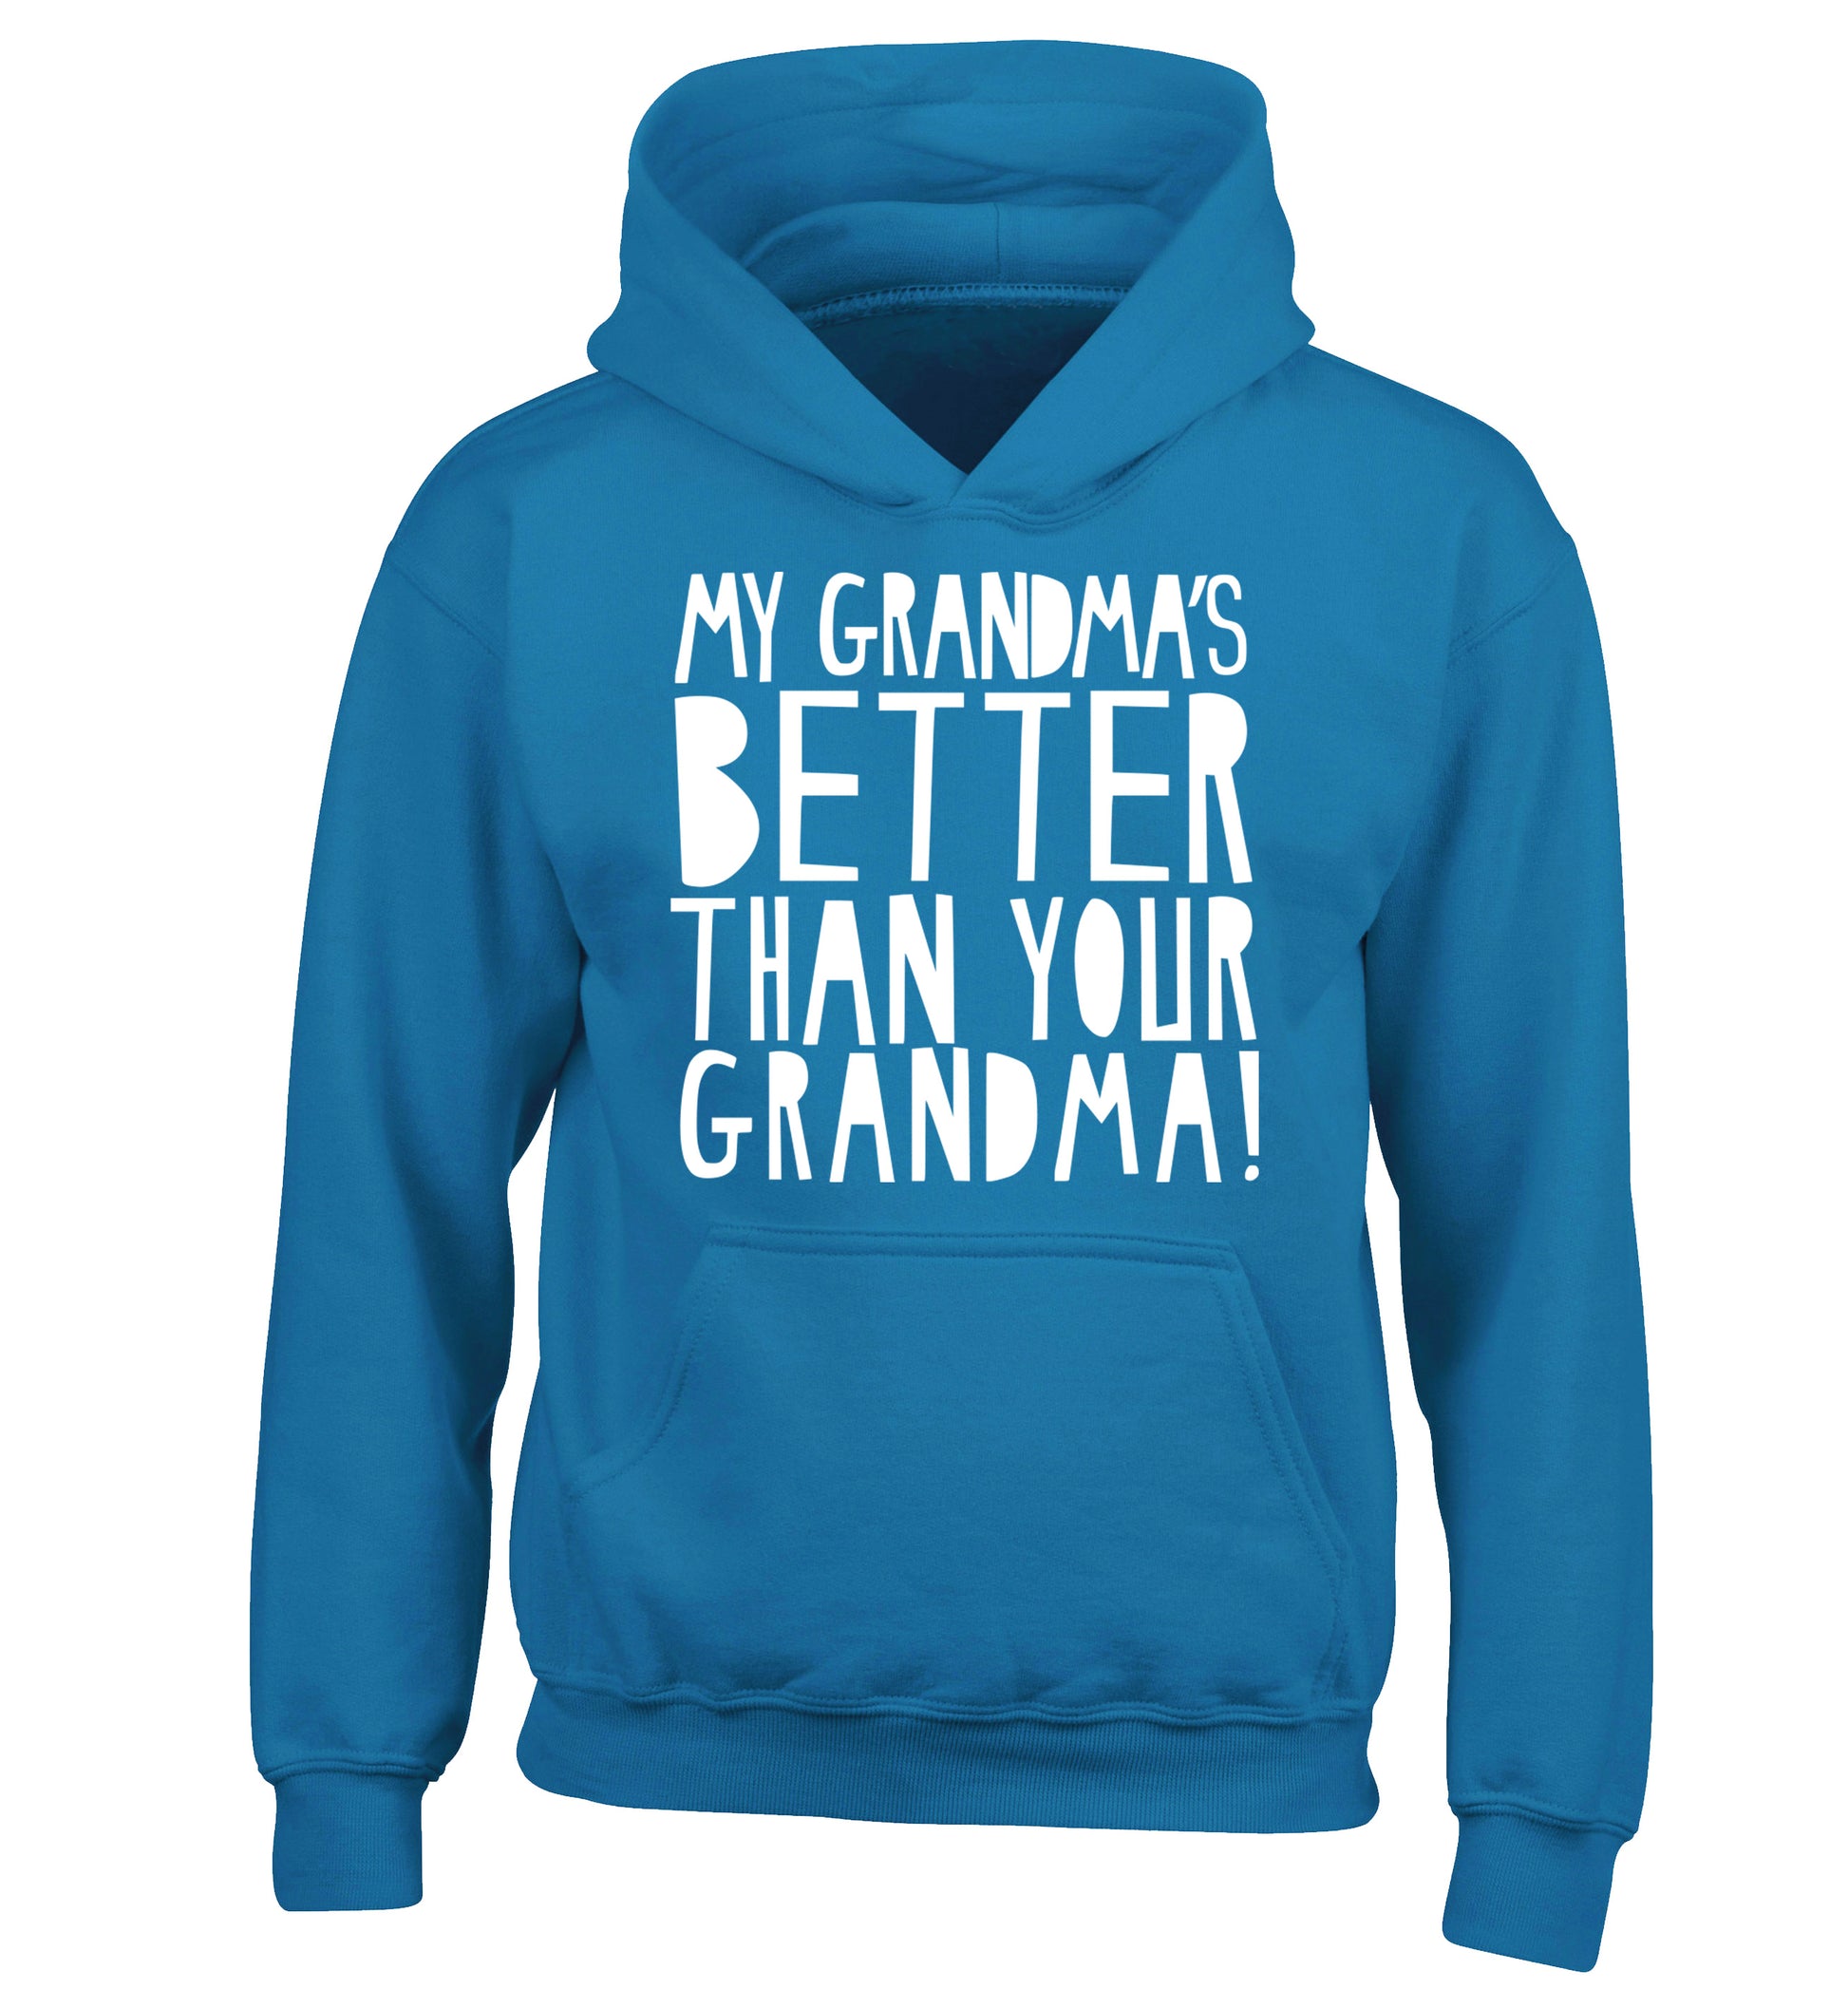 My grandma's better than your grandma children's blue hoodie 12-13 Years